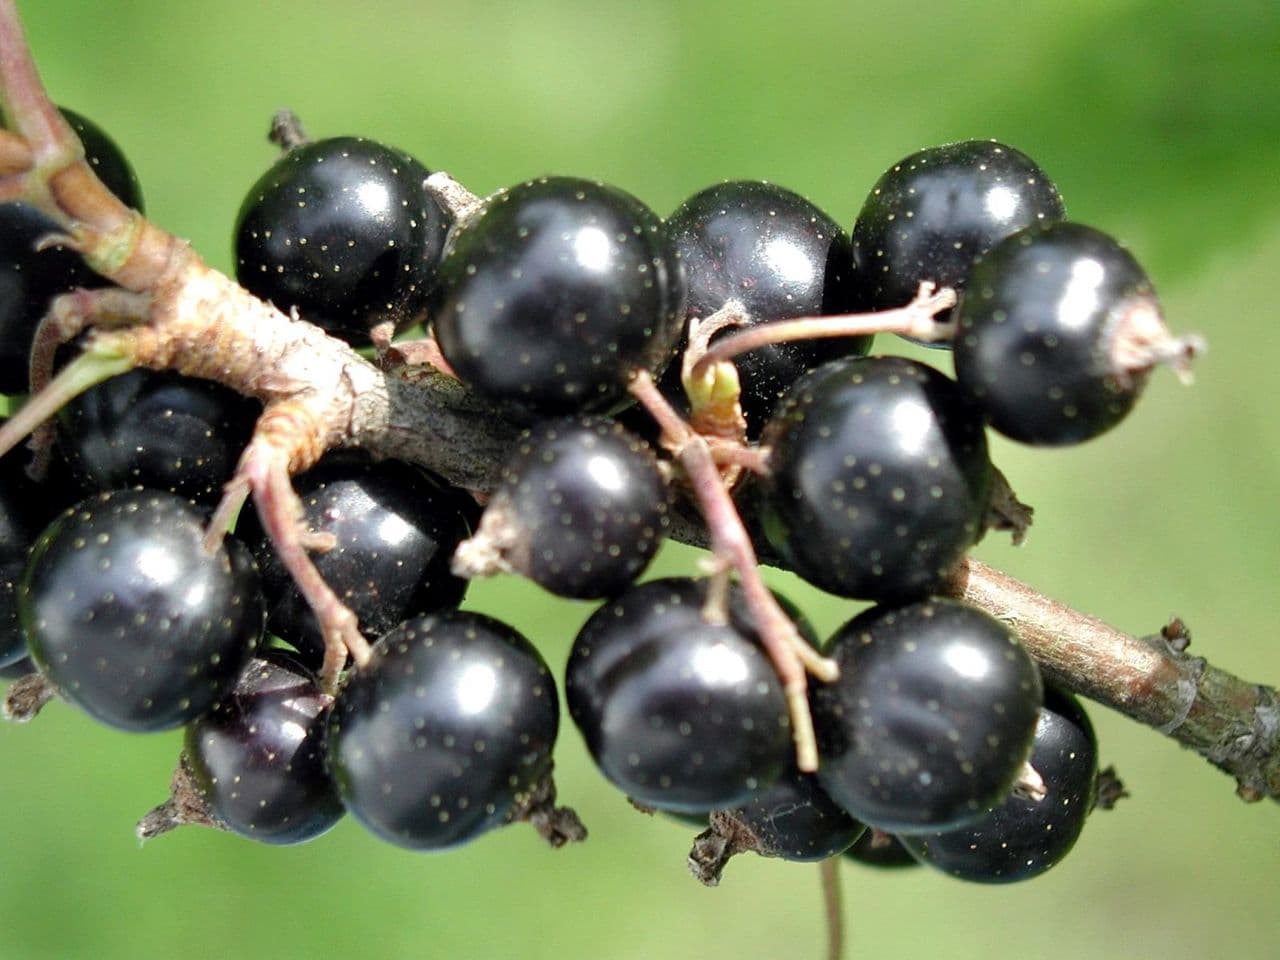 Чёрная смородина вологда – вкусная ягода для любого региона